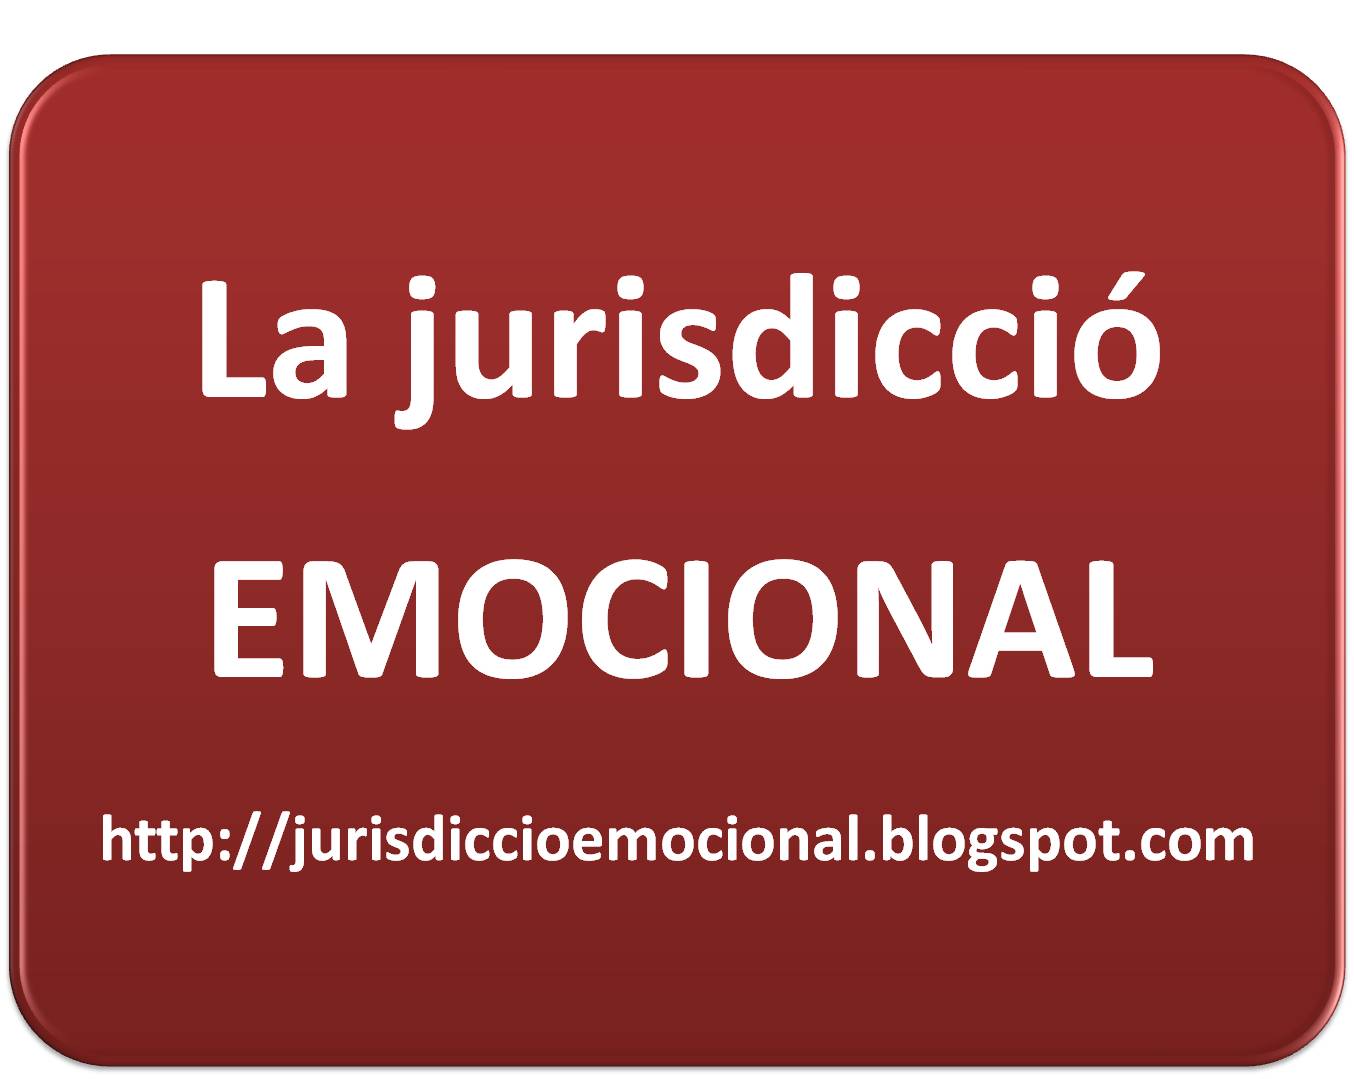 La jurisdicció emocional Un blog d’antropologia jurídica per parlar de les lleis i de la seva interacció amb les emocions humanes